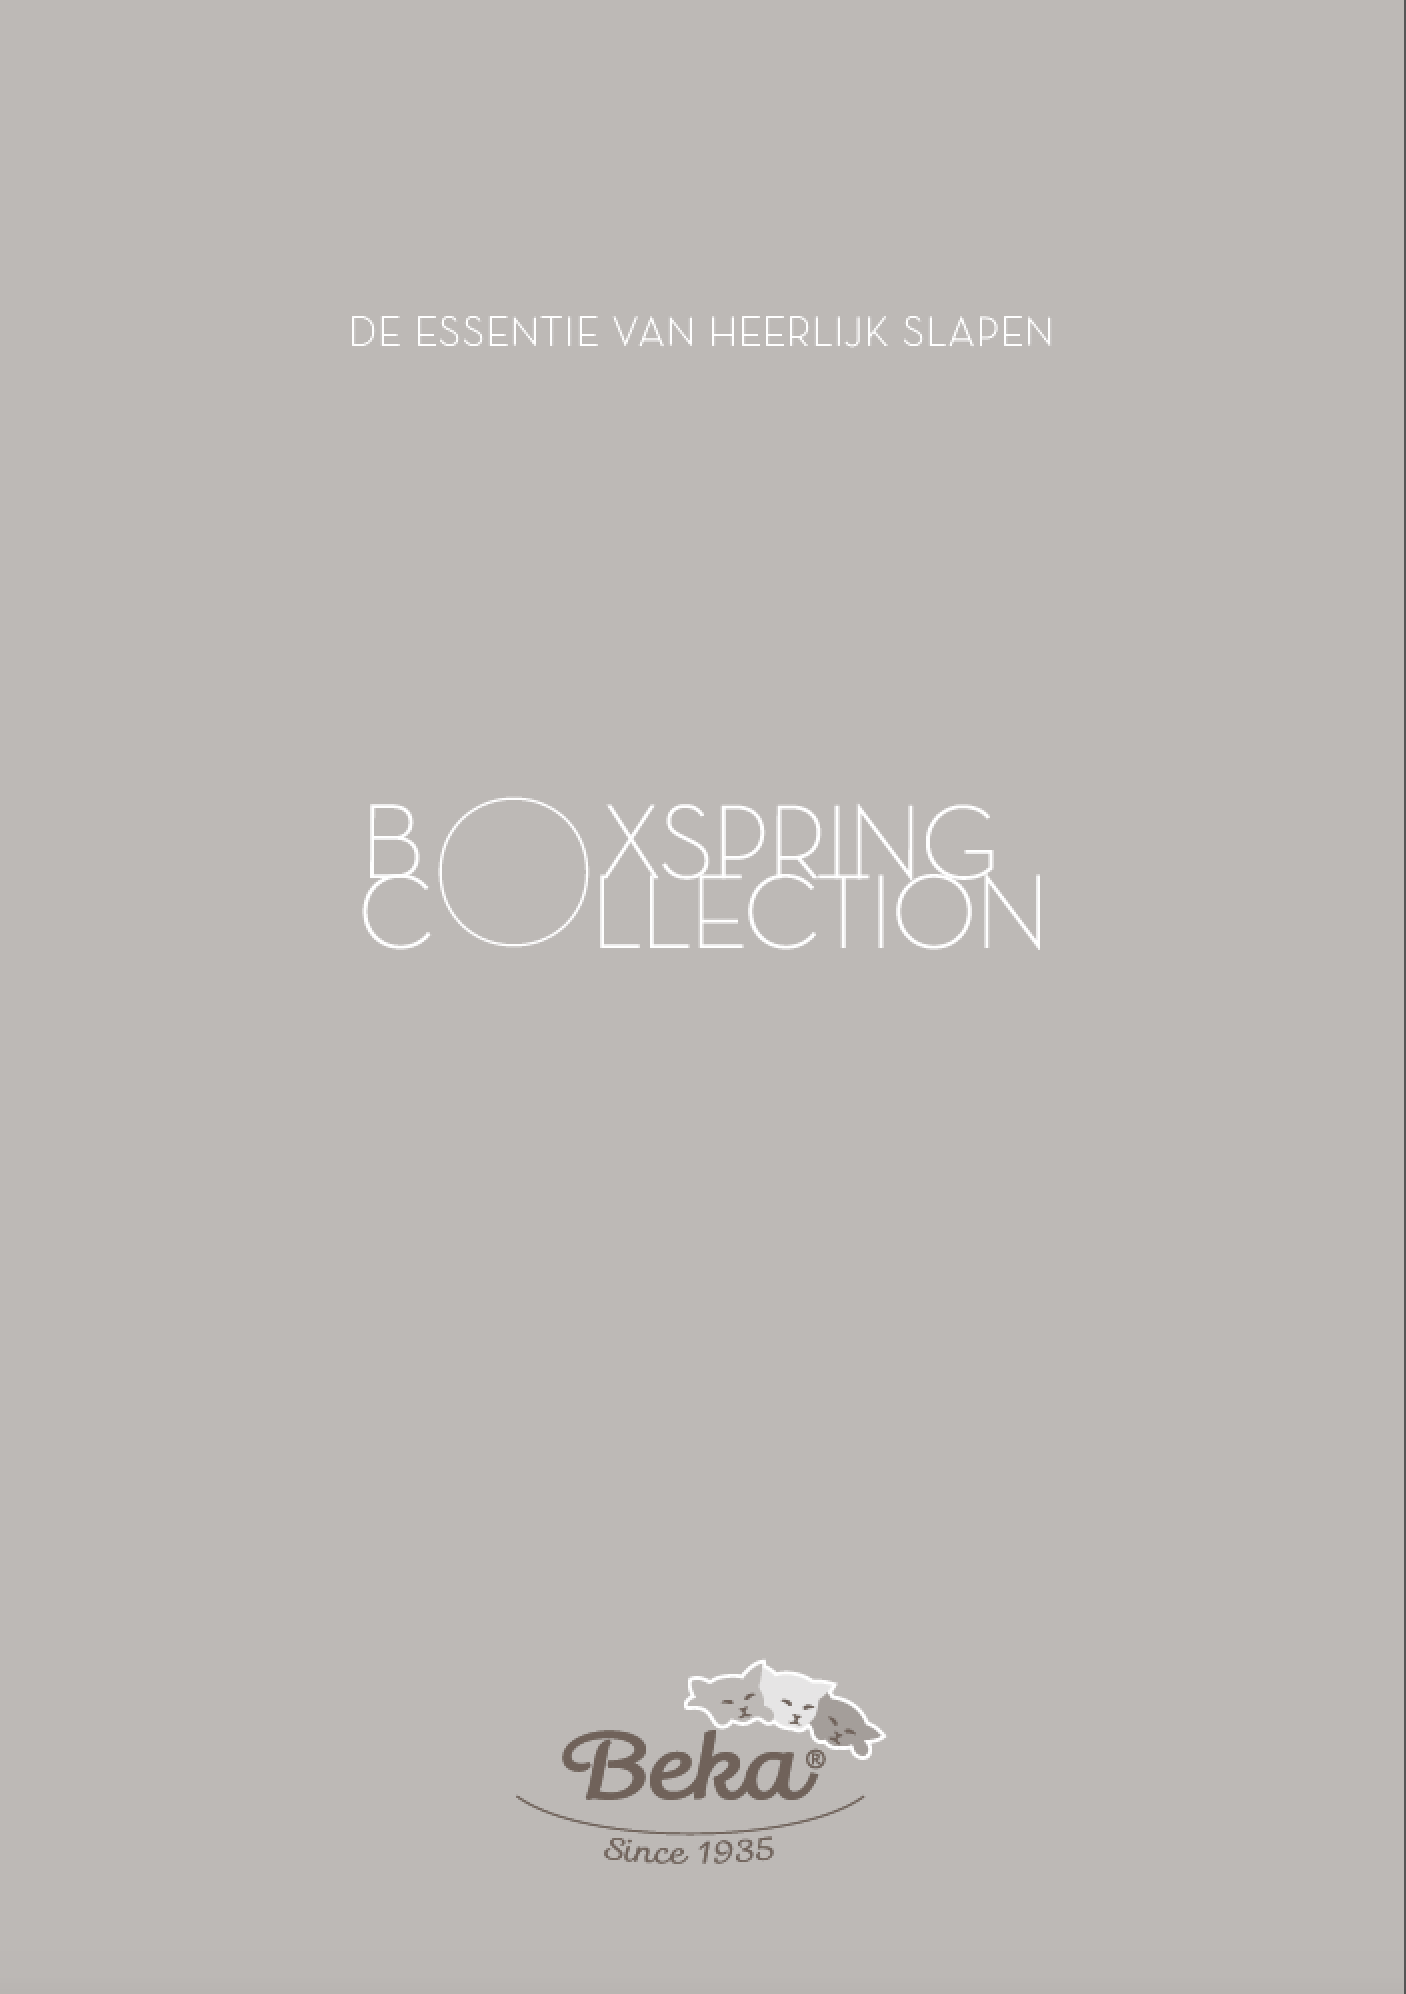 Beka Boxspring collectie